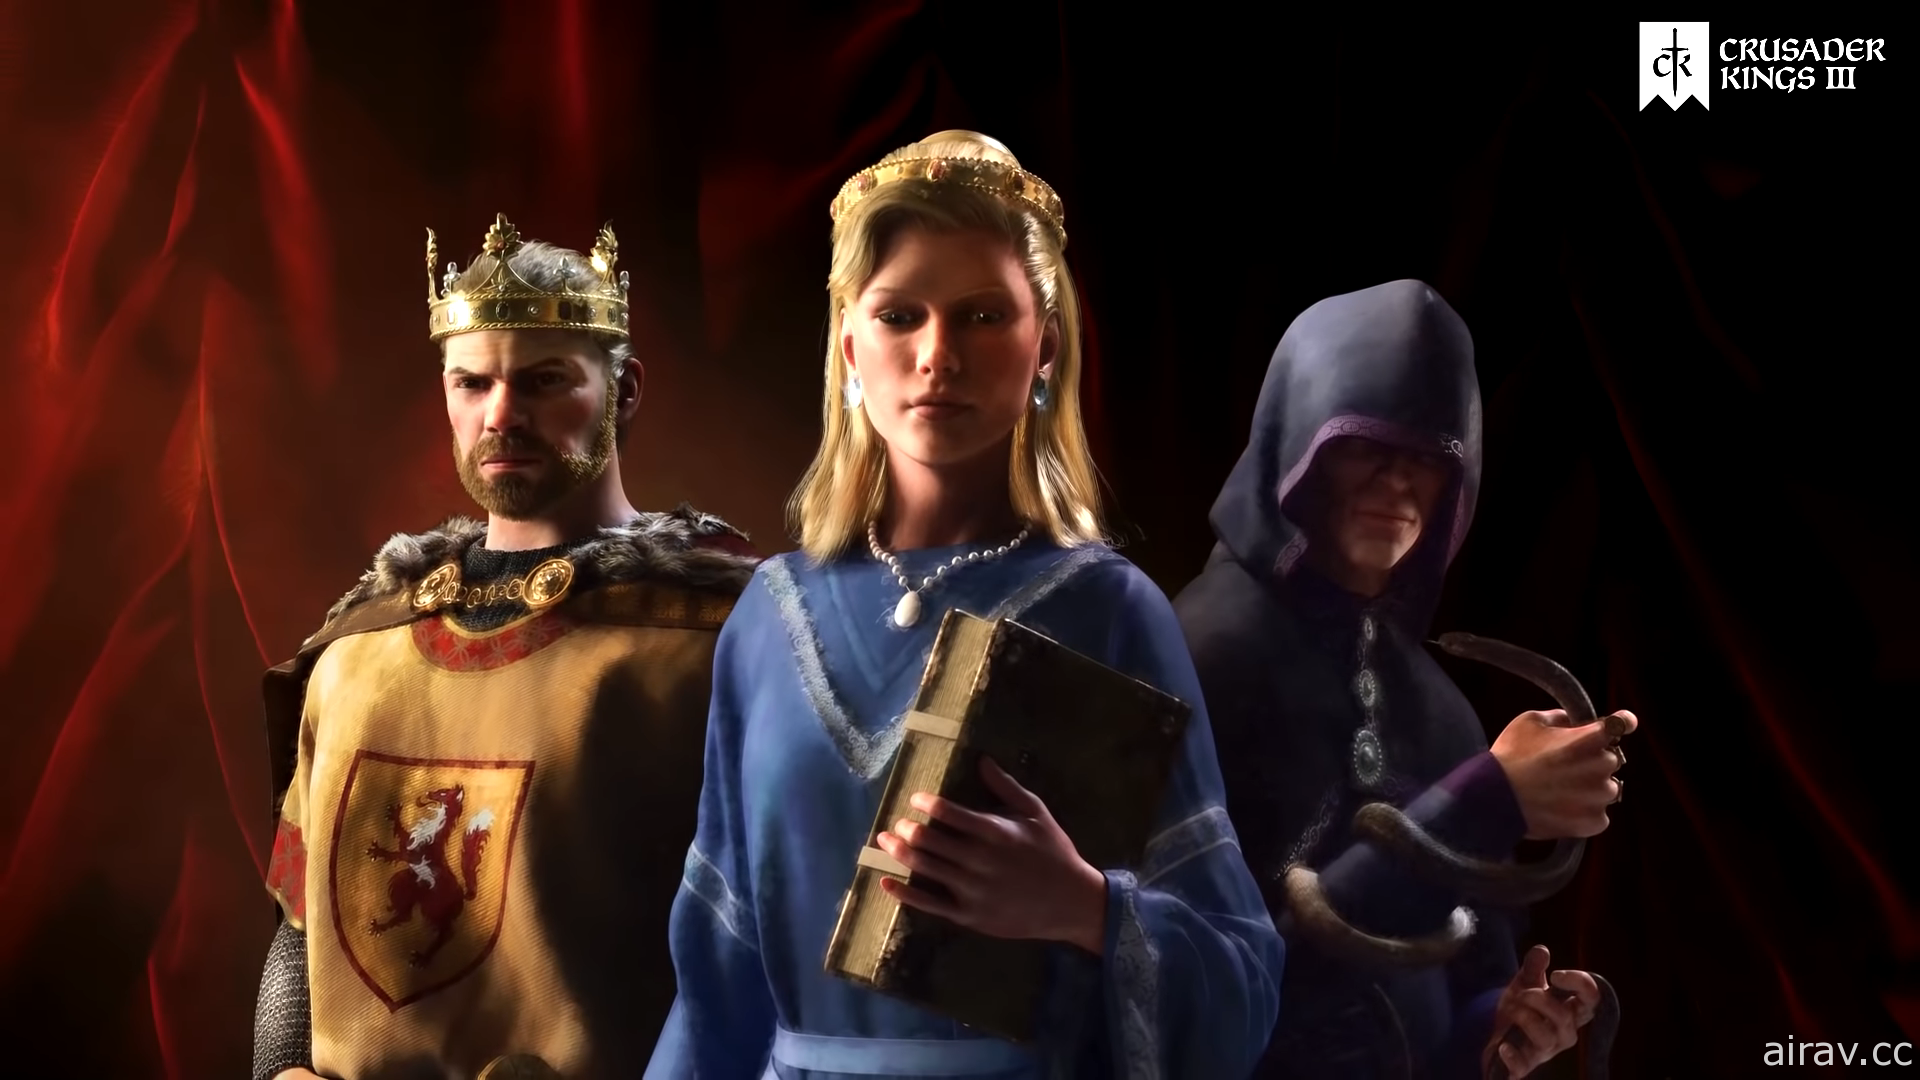 策略遊戲系列新作《十字軍王者 3》今日上市 努力讓皇室繁榮興盛